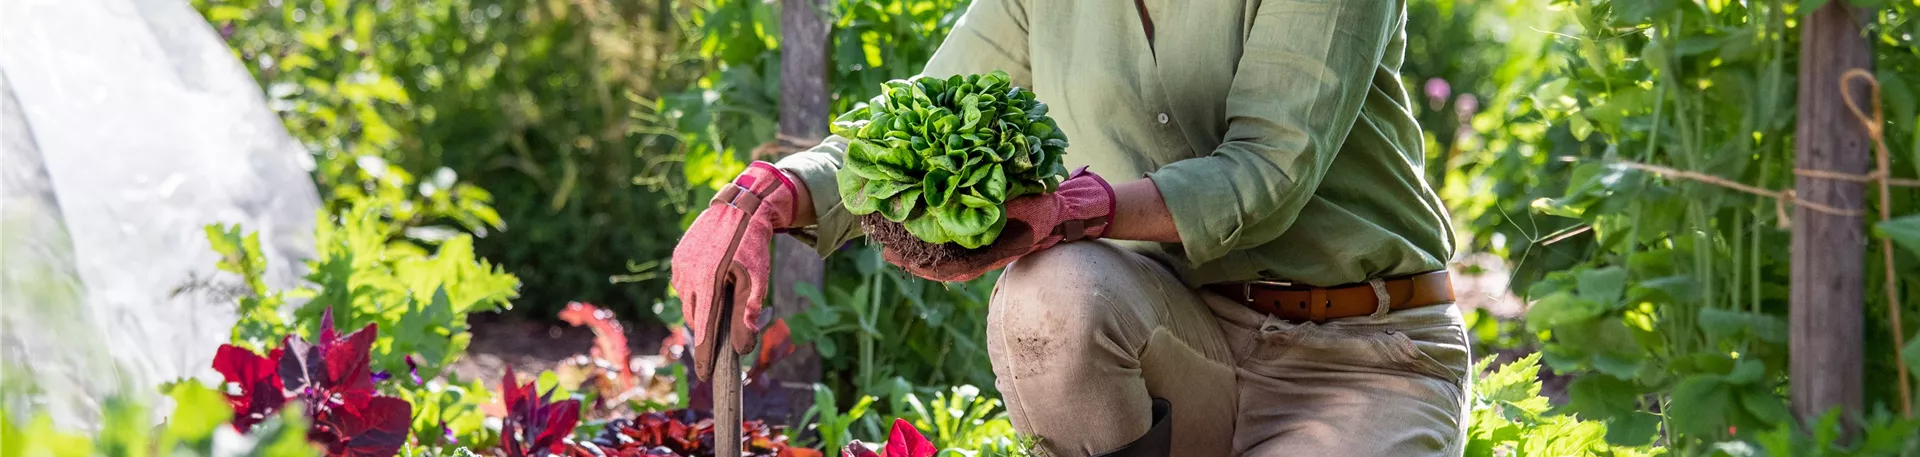 Gartenarbeit - Frau mit Salat und Gartenschaufel 